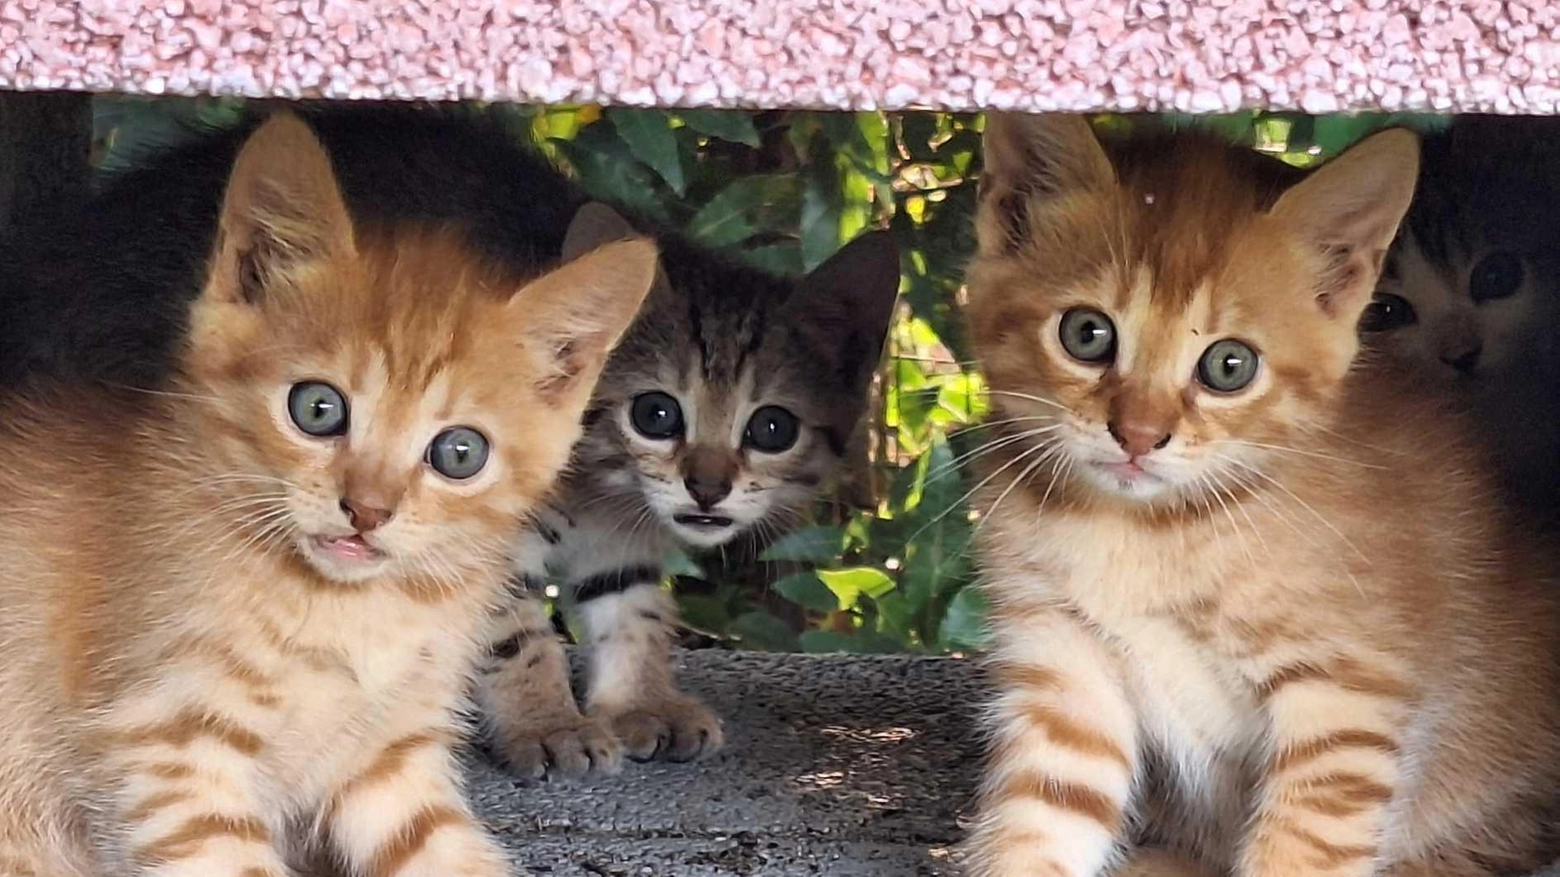 Gattini spariti nel nulla: "Avevamo cinque micetti. Da lunedì non si trovano"